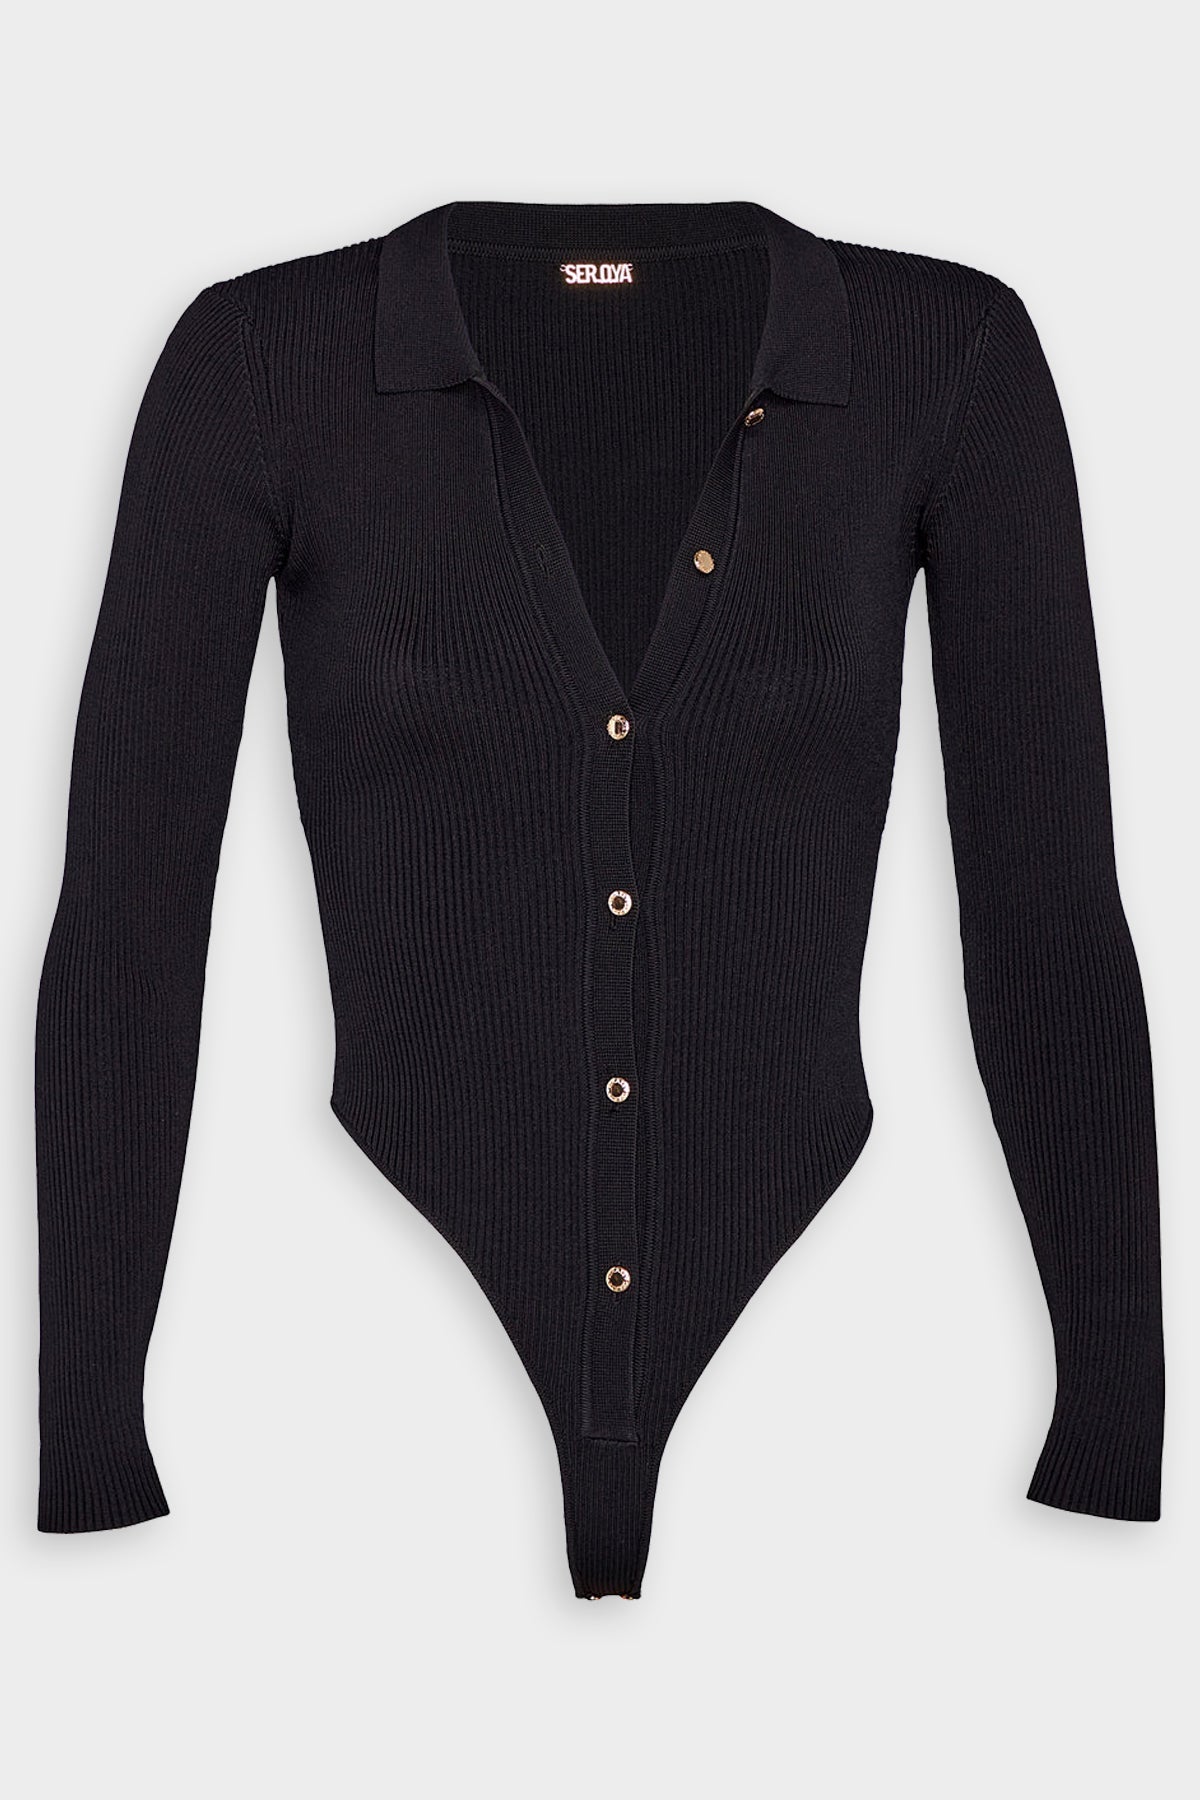 Nala Bodysuit in Black - shop-olivia.com